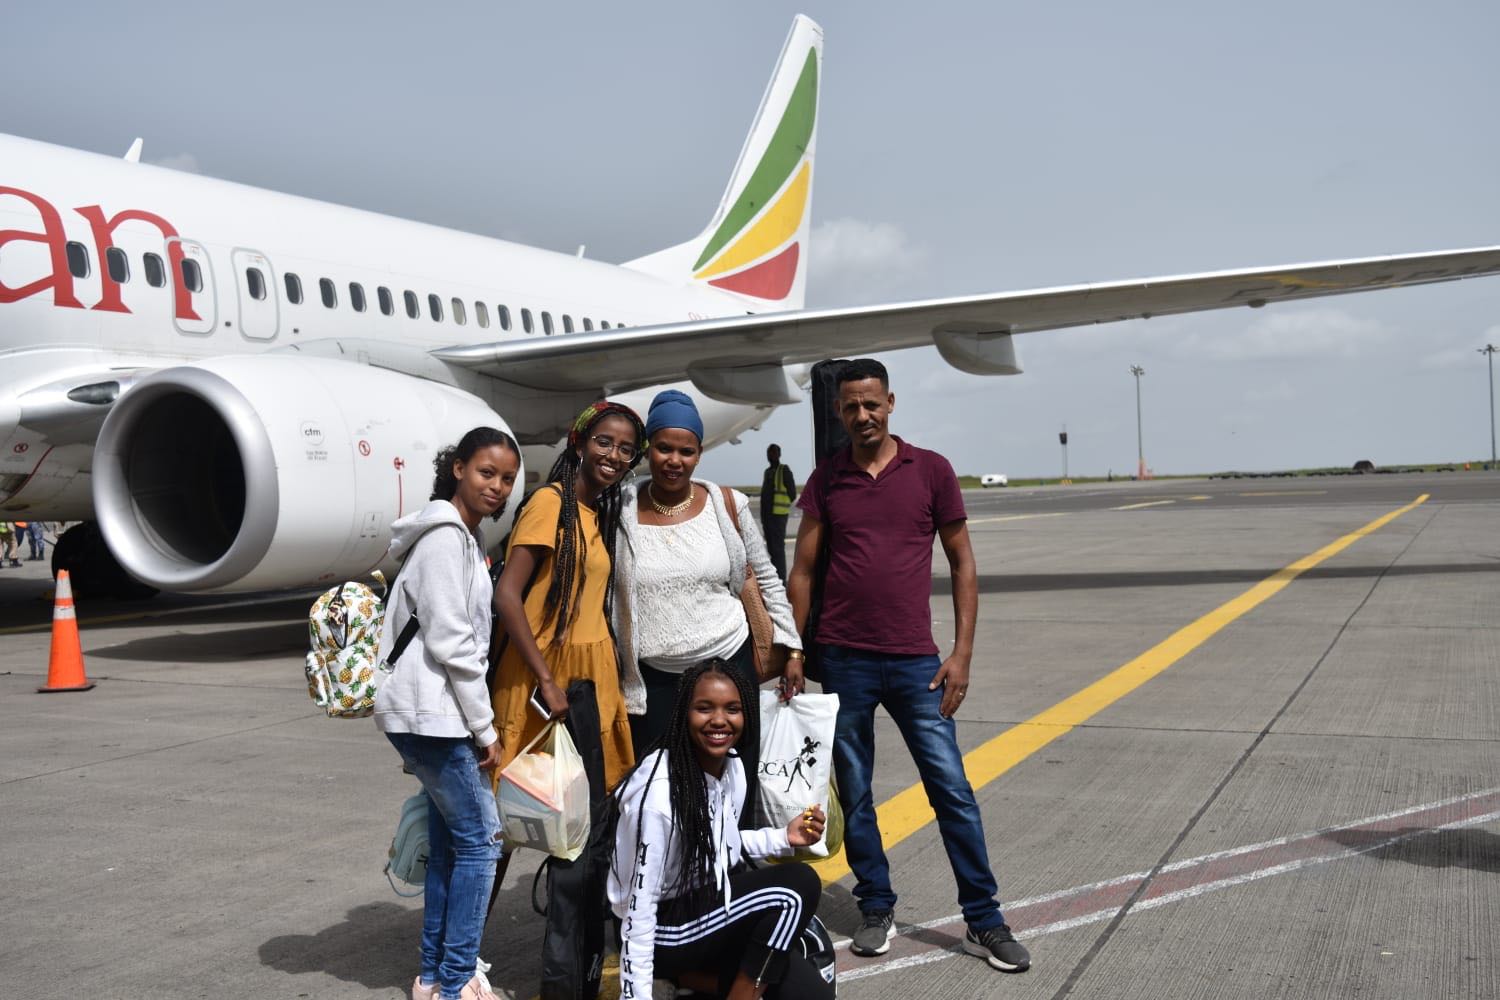 שיתוף פעולה ראשון מסוגו בין עיריית בת ים לאוניברסיטת סטנפורד: משלחת ייחודית של נערות מבת ים ובני משפחותיהן יצאה לגונדר שבאתיופיה